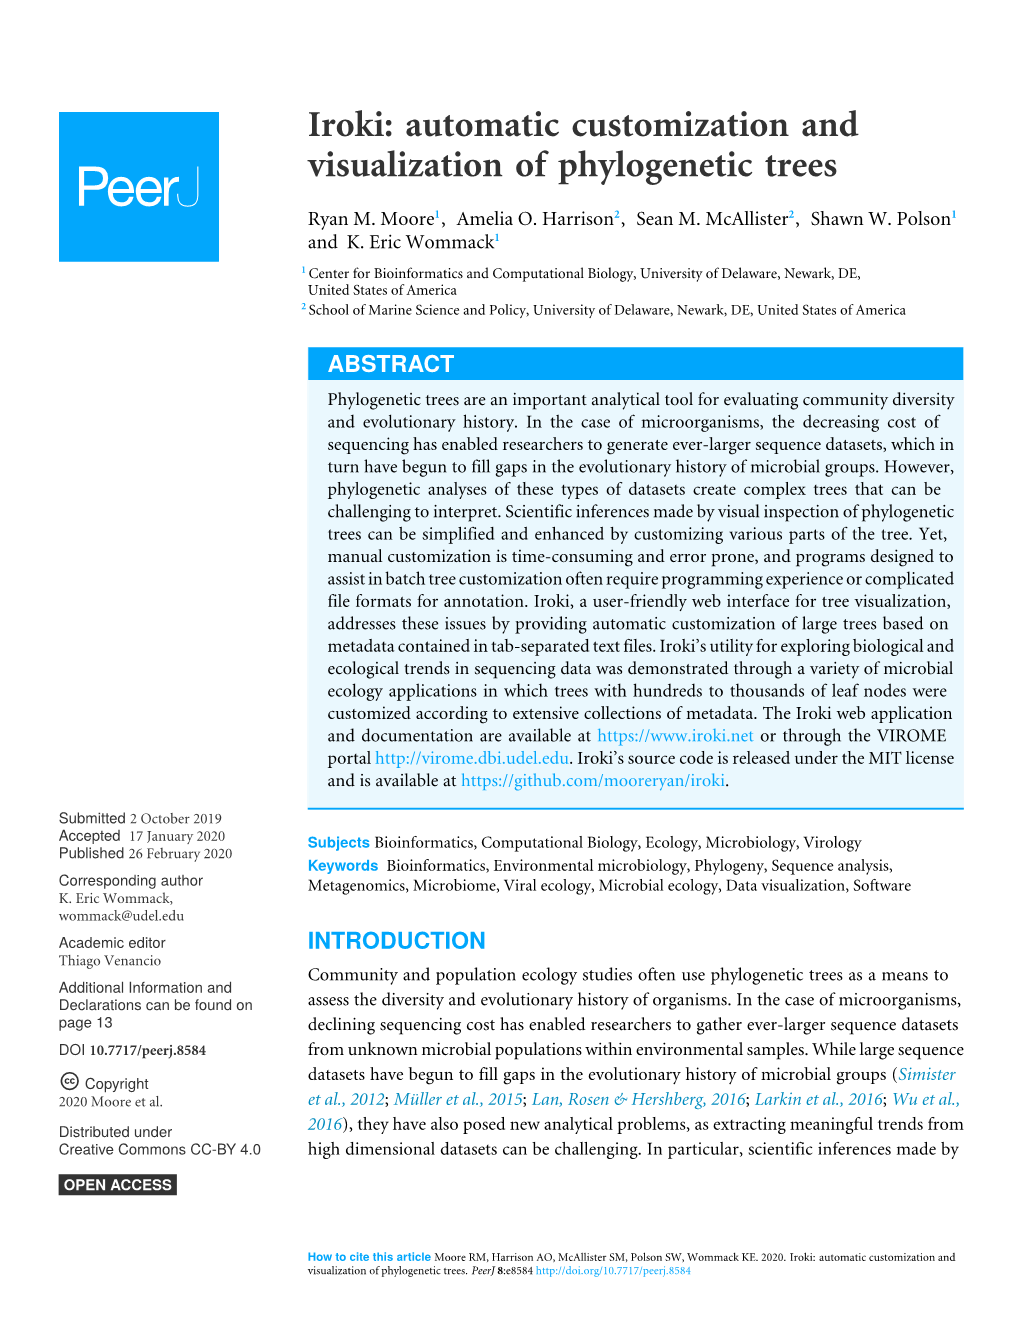 Iroki: Automatic Customization and Visualization of Phylogenetic Trees